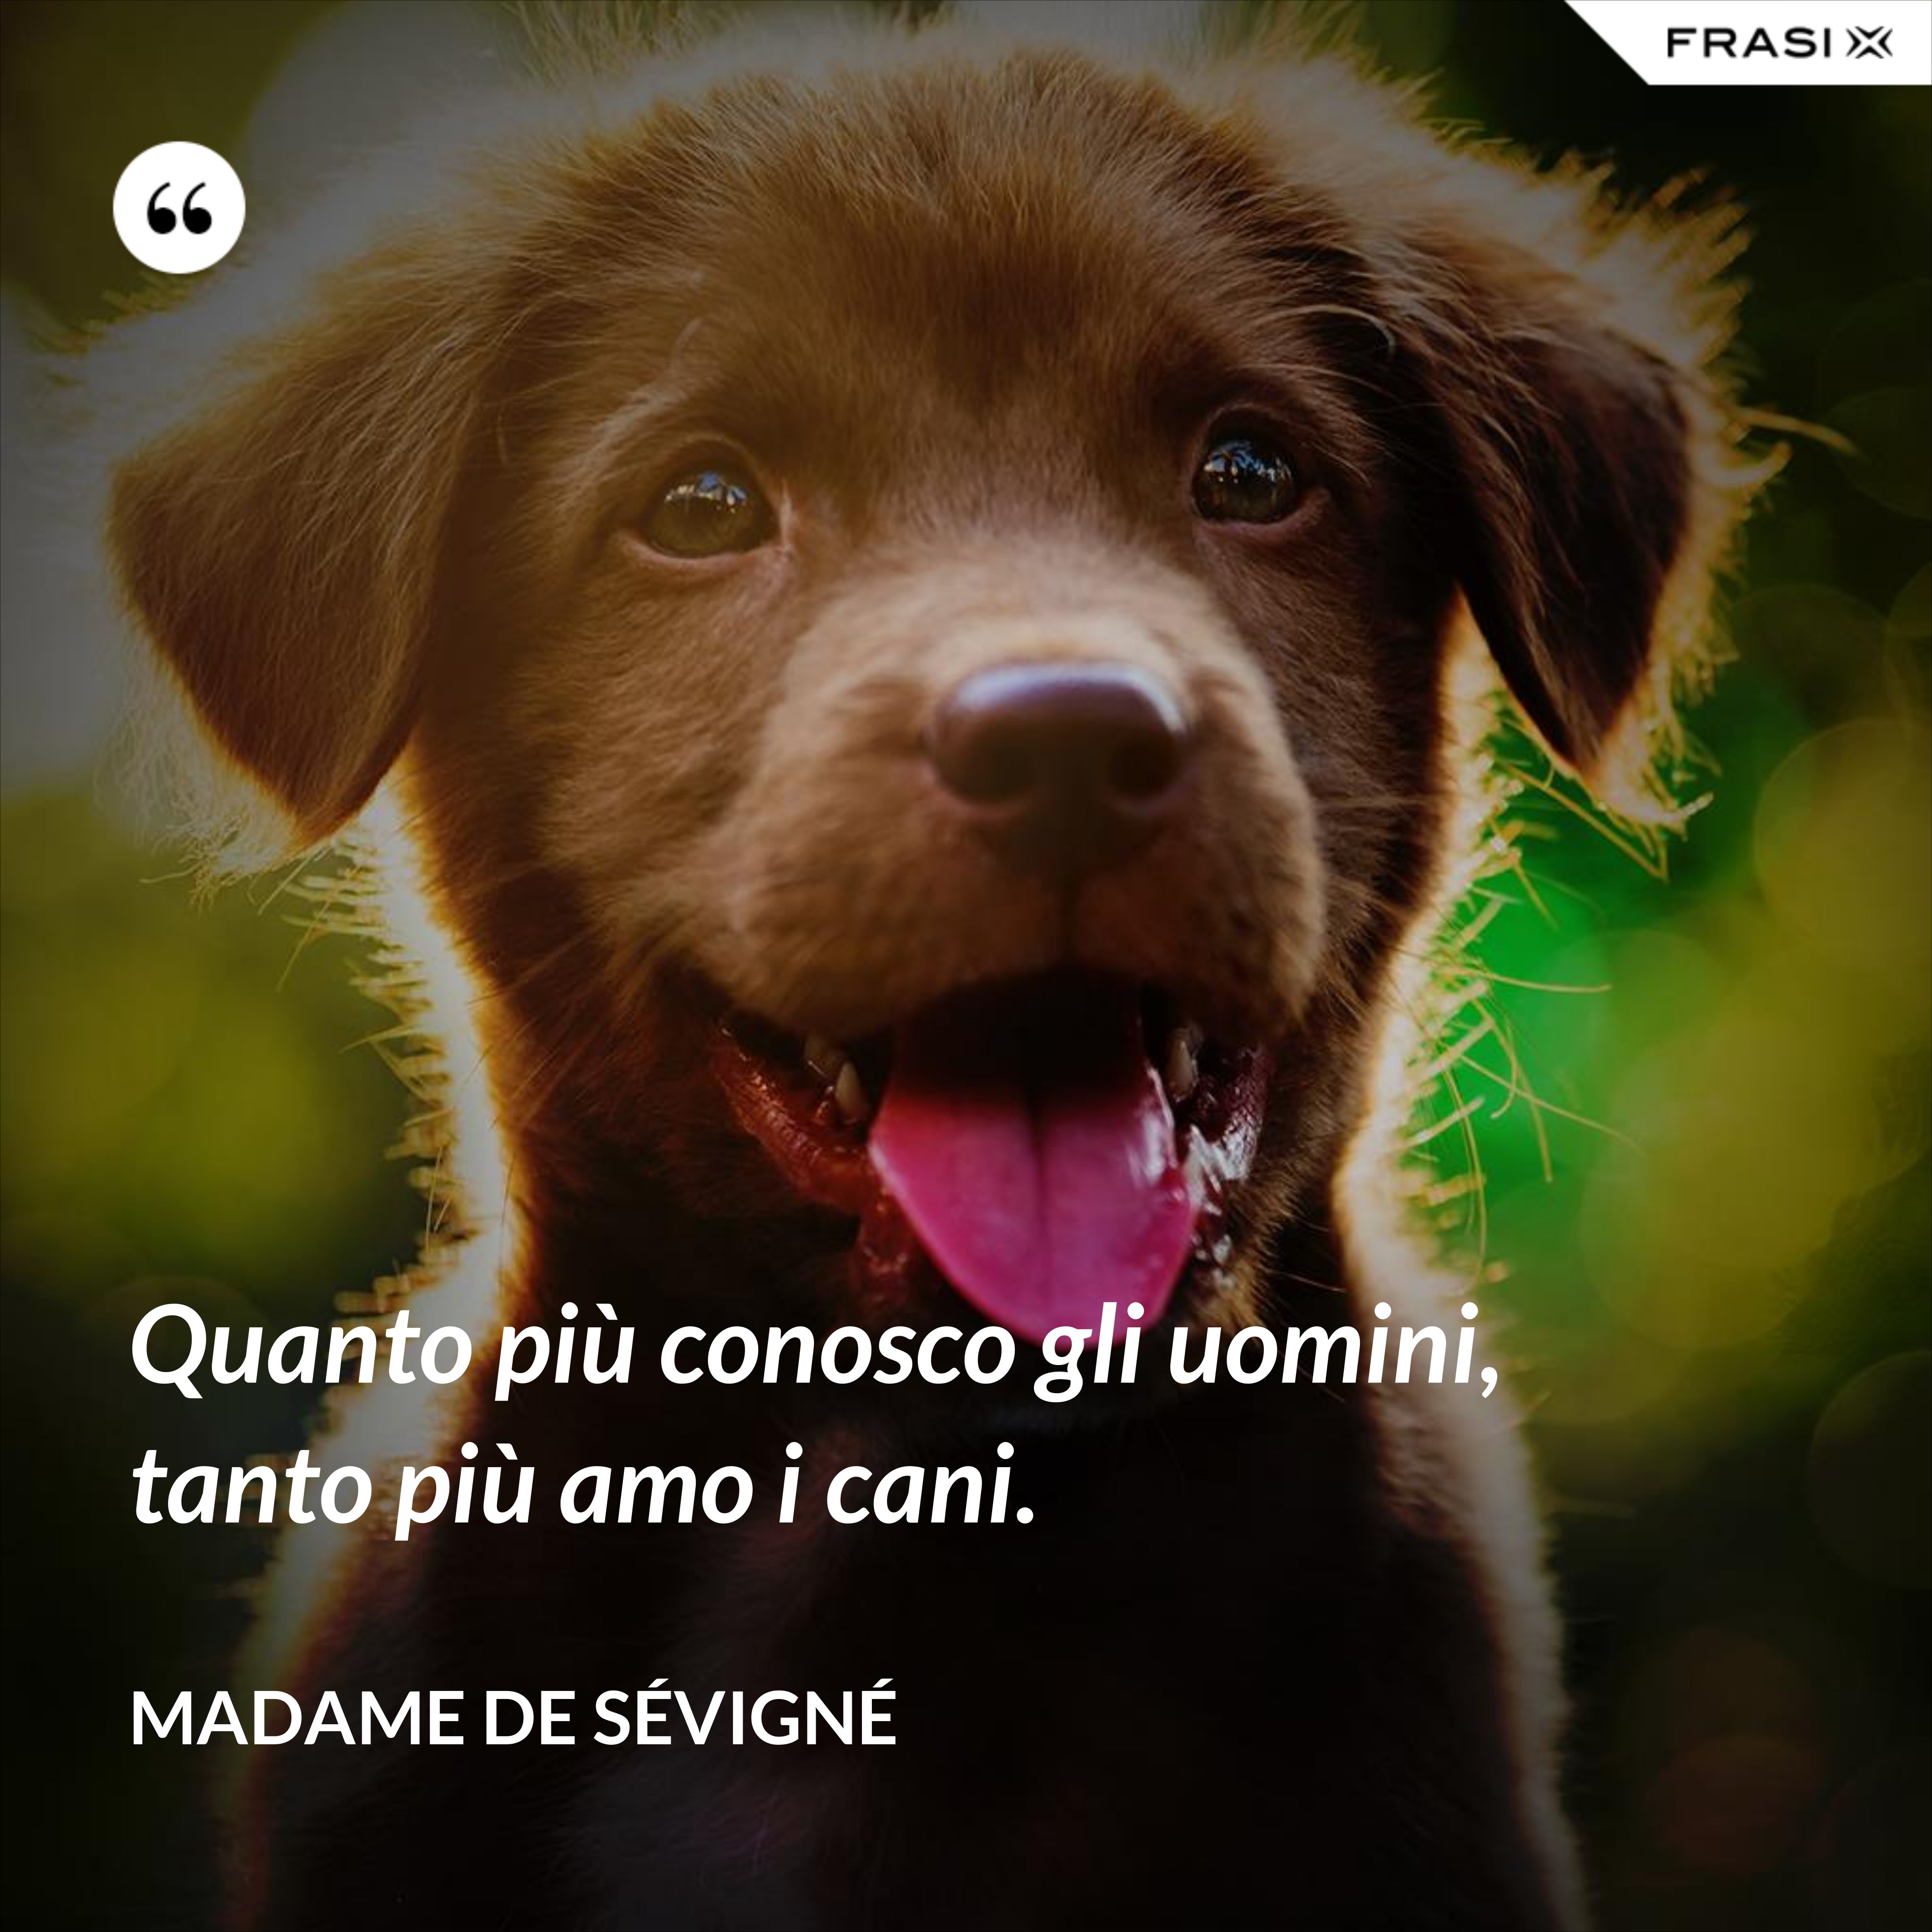 Quanto più conosco gli uomini, tanto più amo i cani. - Madame de Sévigné